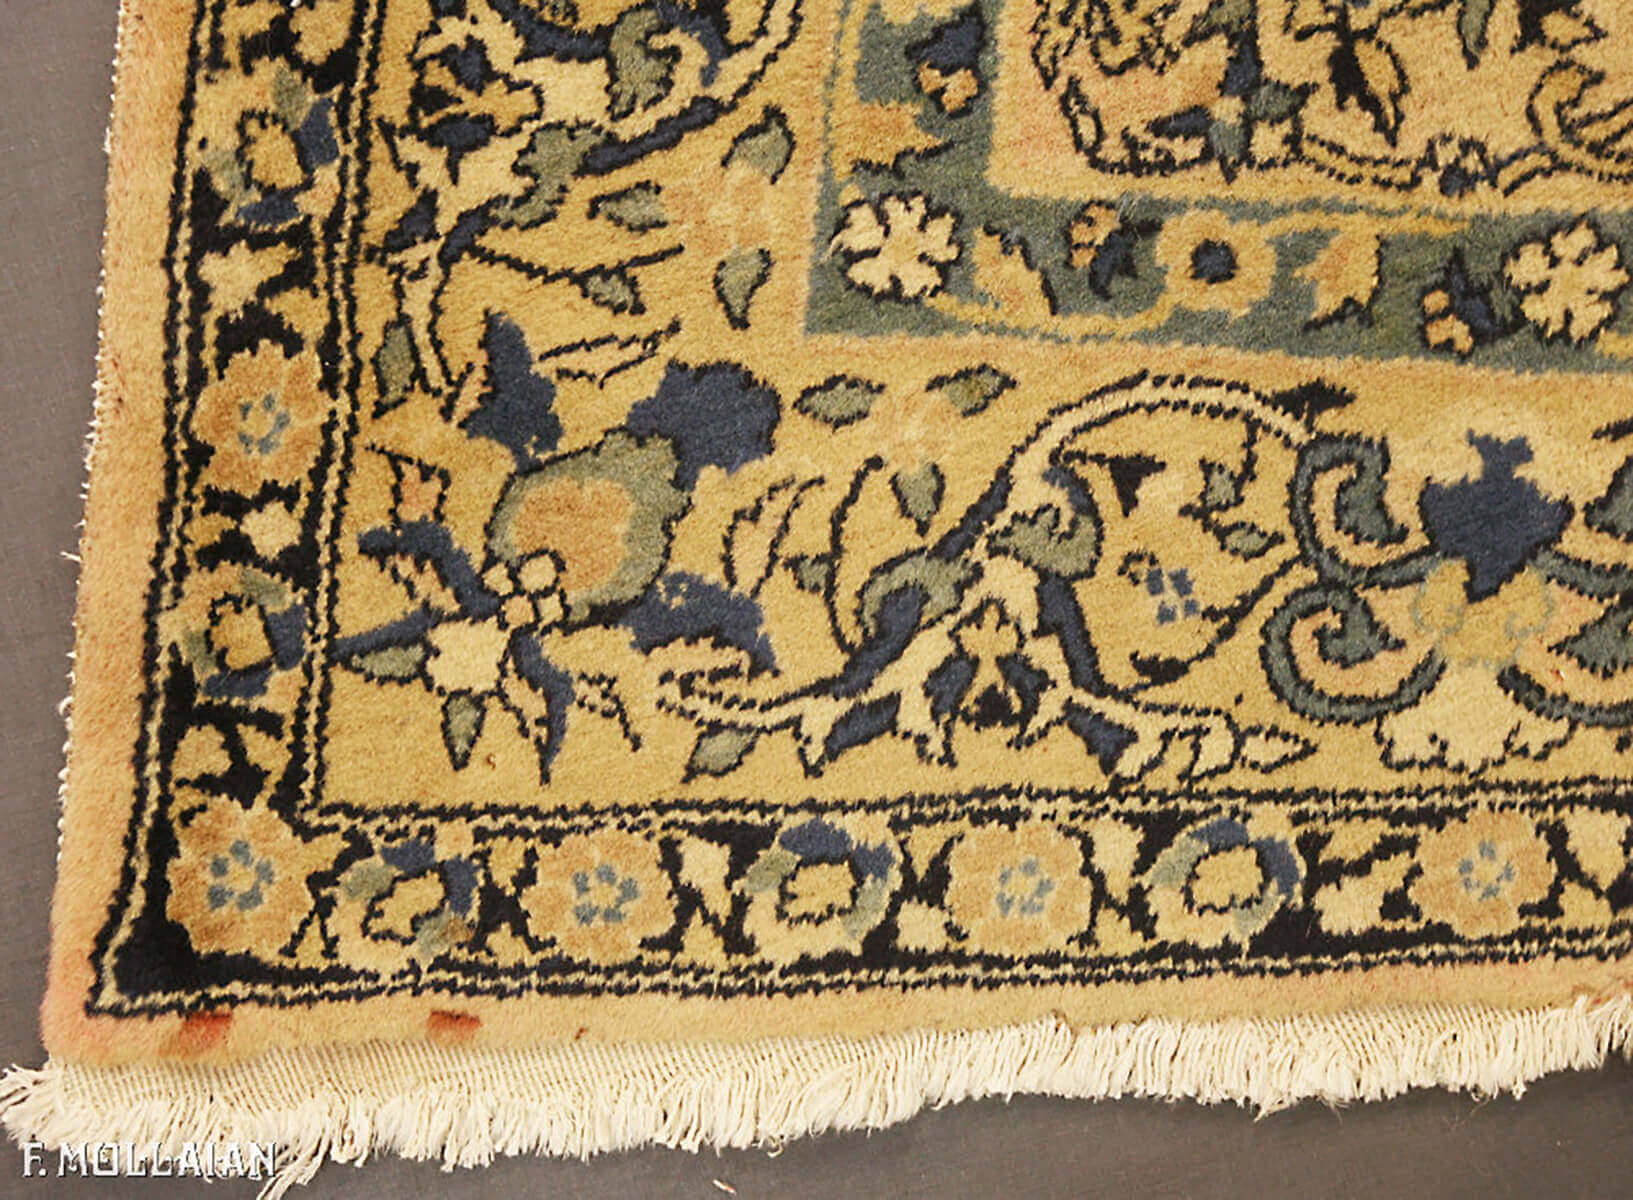 Antique Indian Indosaruk Carpet n°:61585585